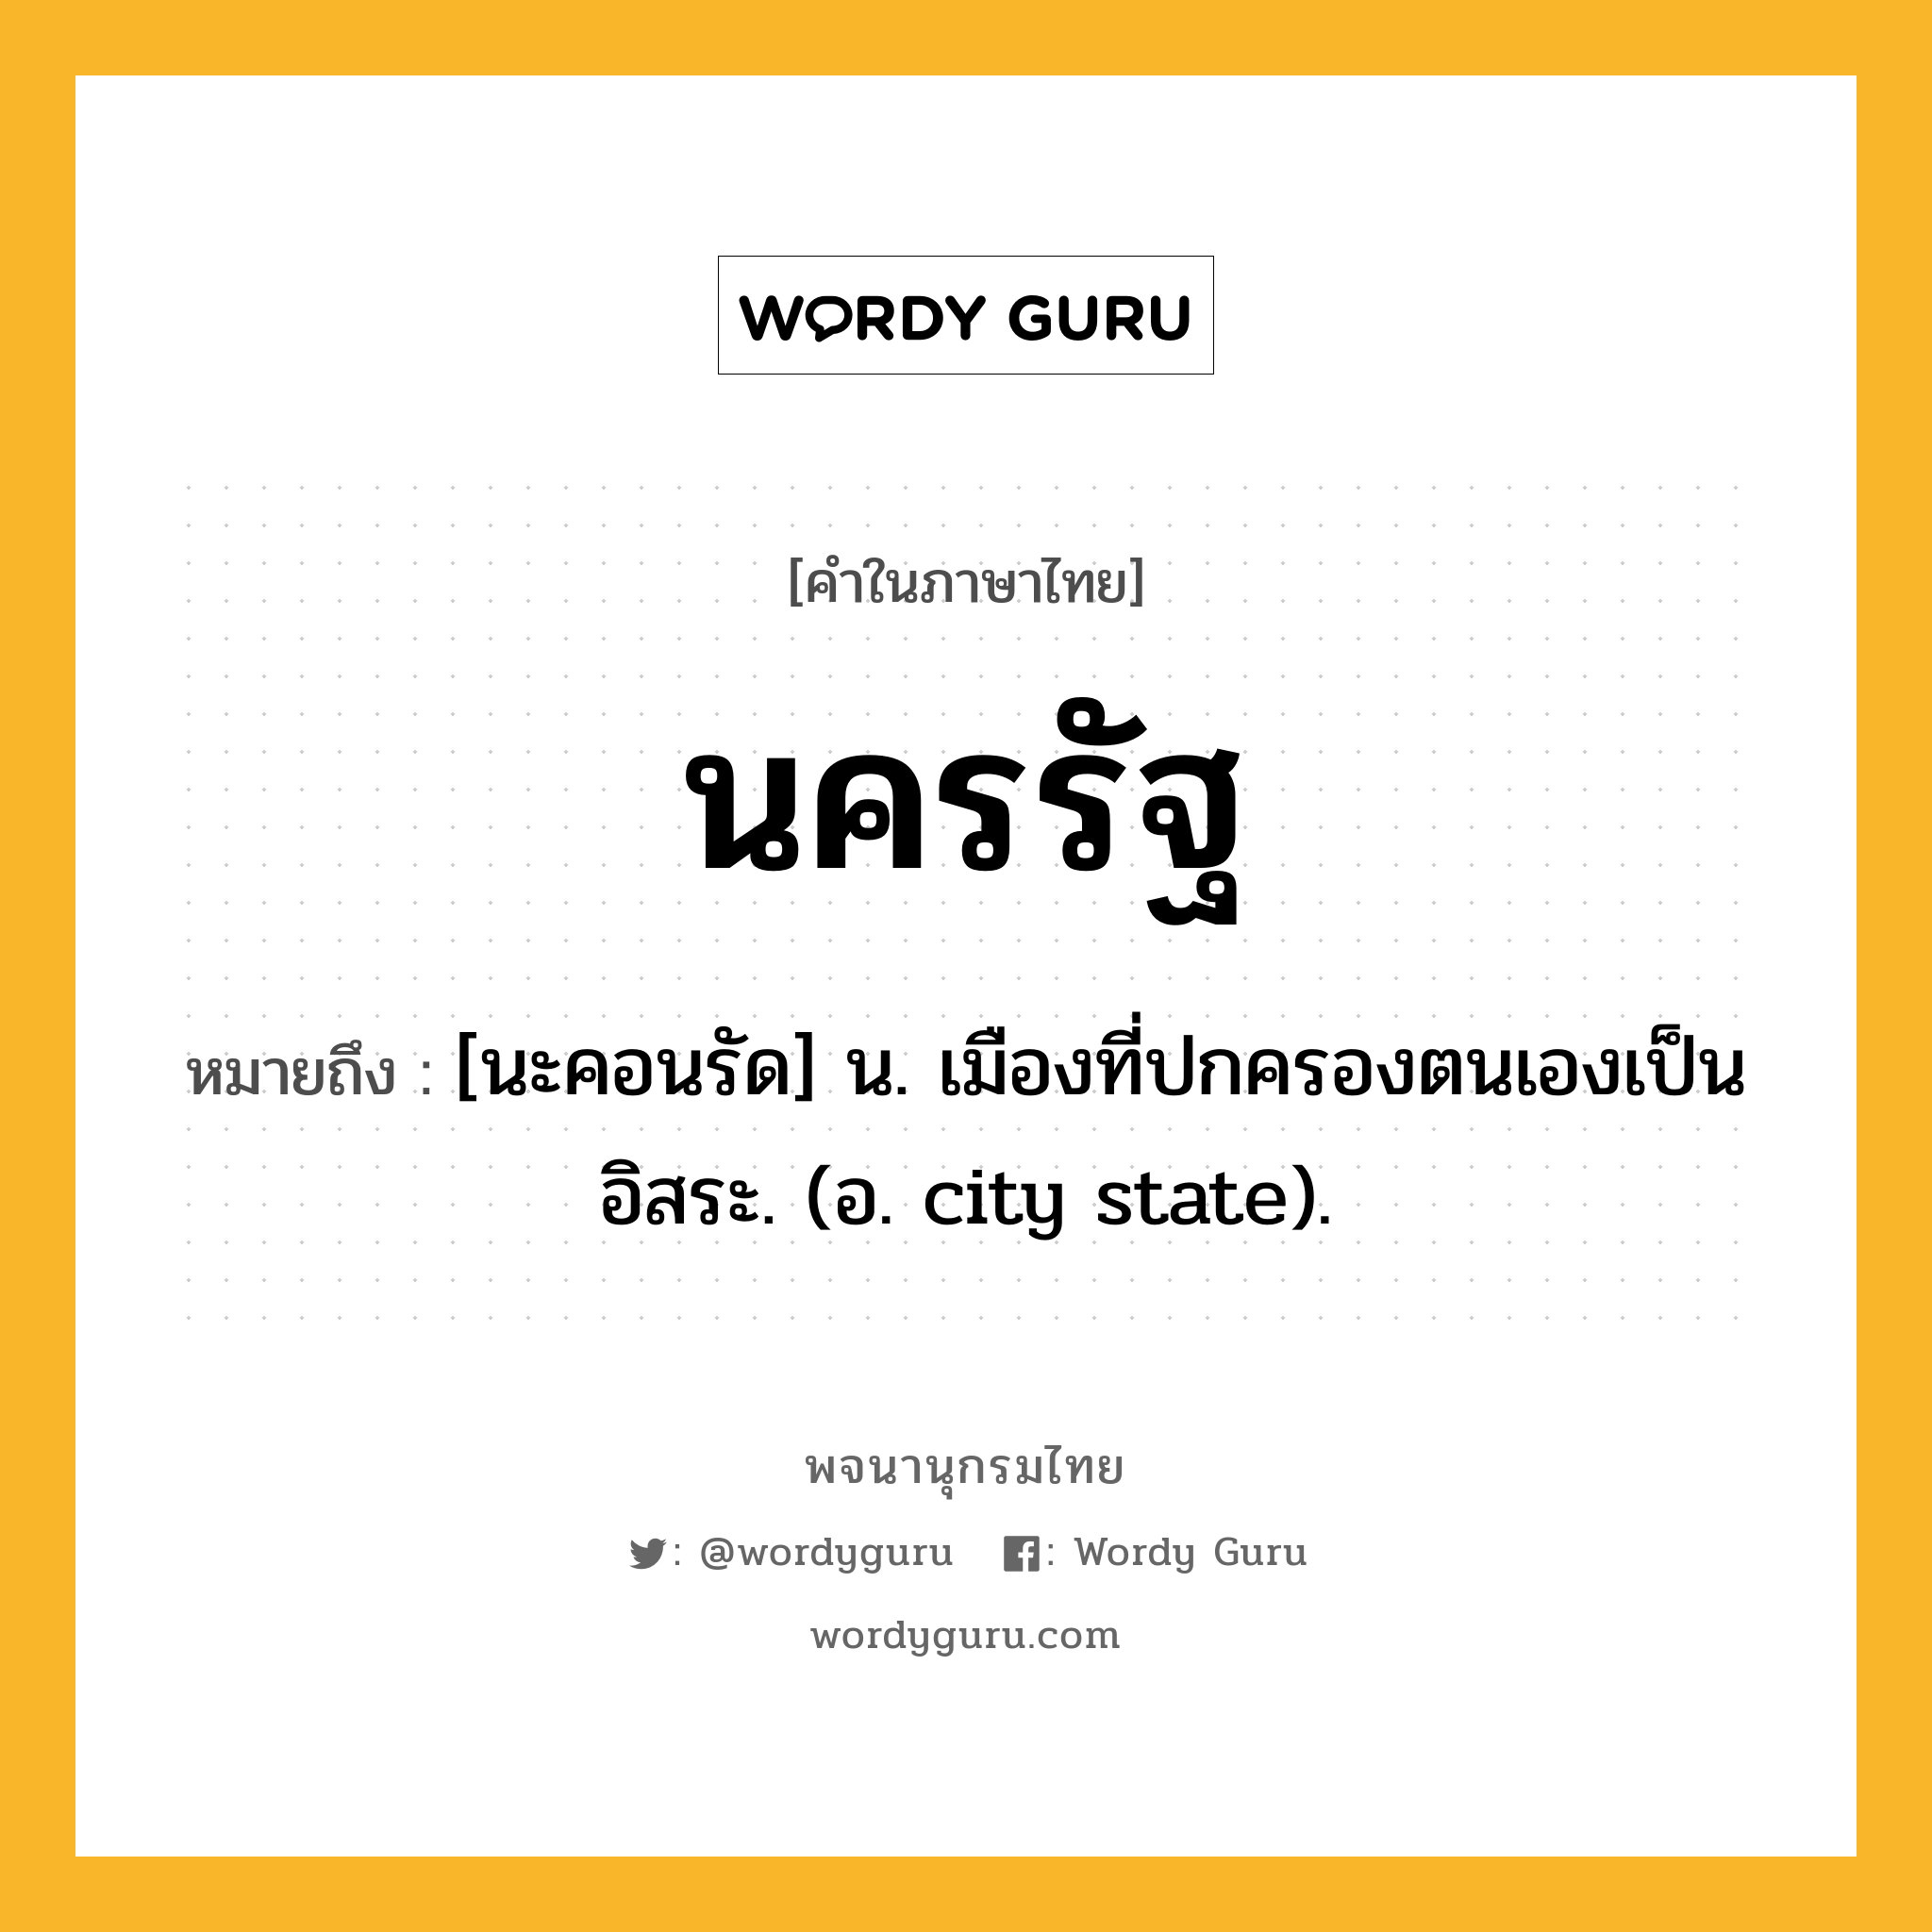 นครรัฐ ความหมาย หมายถึงอะไร?, คำในภาษาไทย นครรัฐ หมายถึง [นะคอนรัด] น. เมืองที่ปกครองตนเองเป็นอิสระ. (อ. city state).